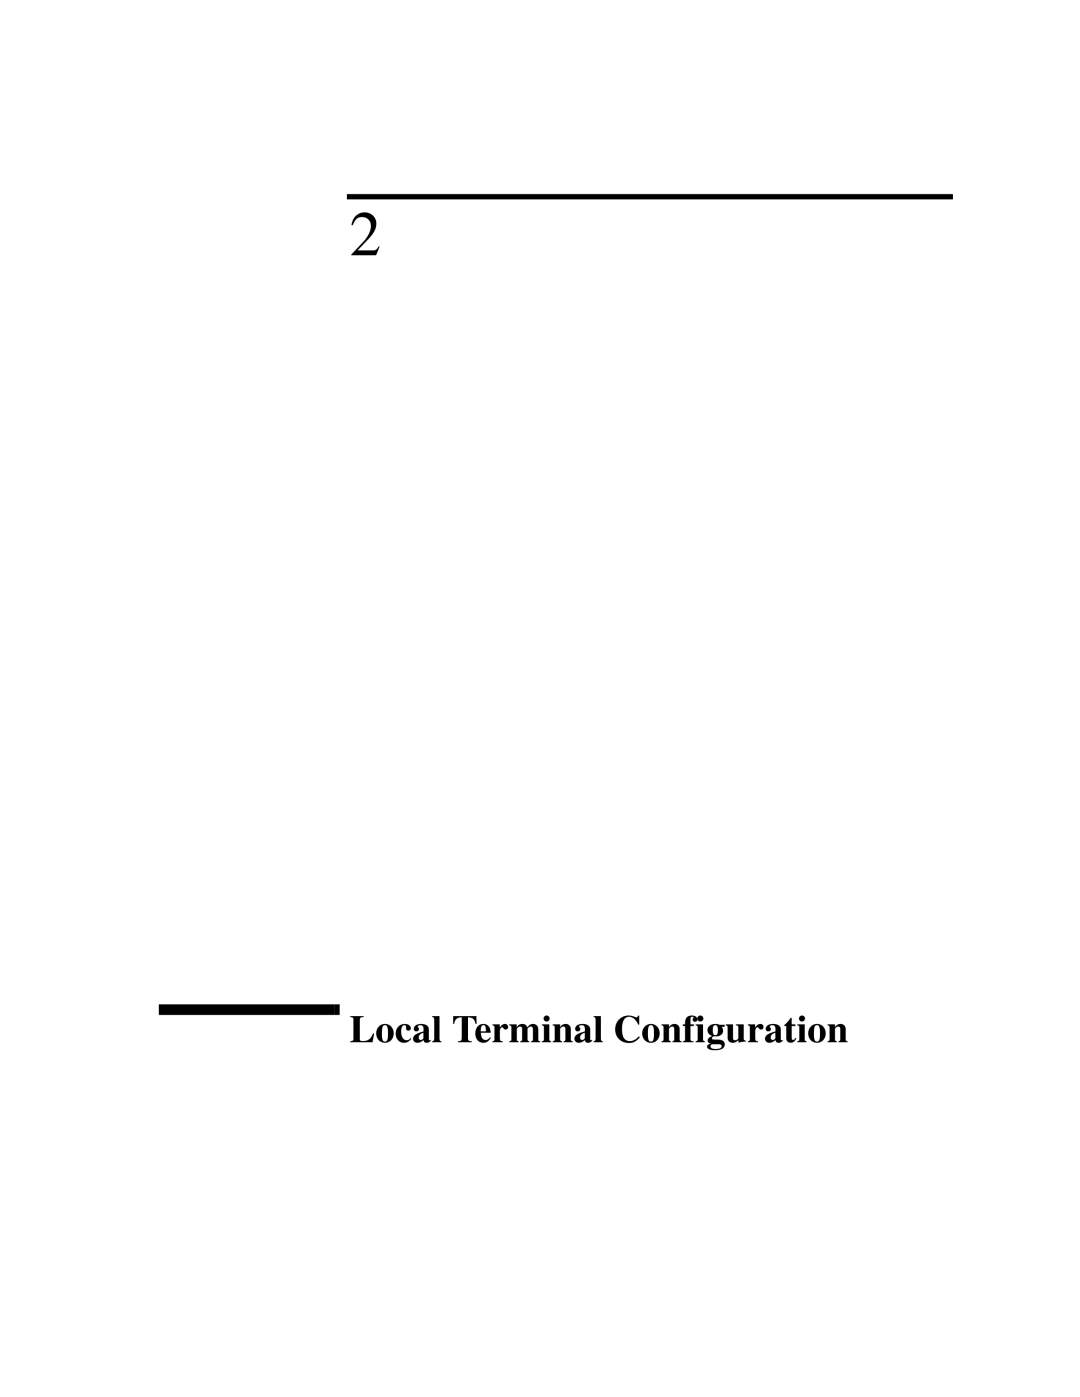 IBM 4986B LanProbe manual Local Terminal Configuration 